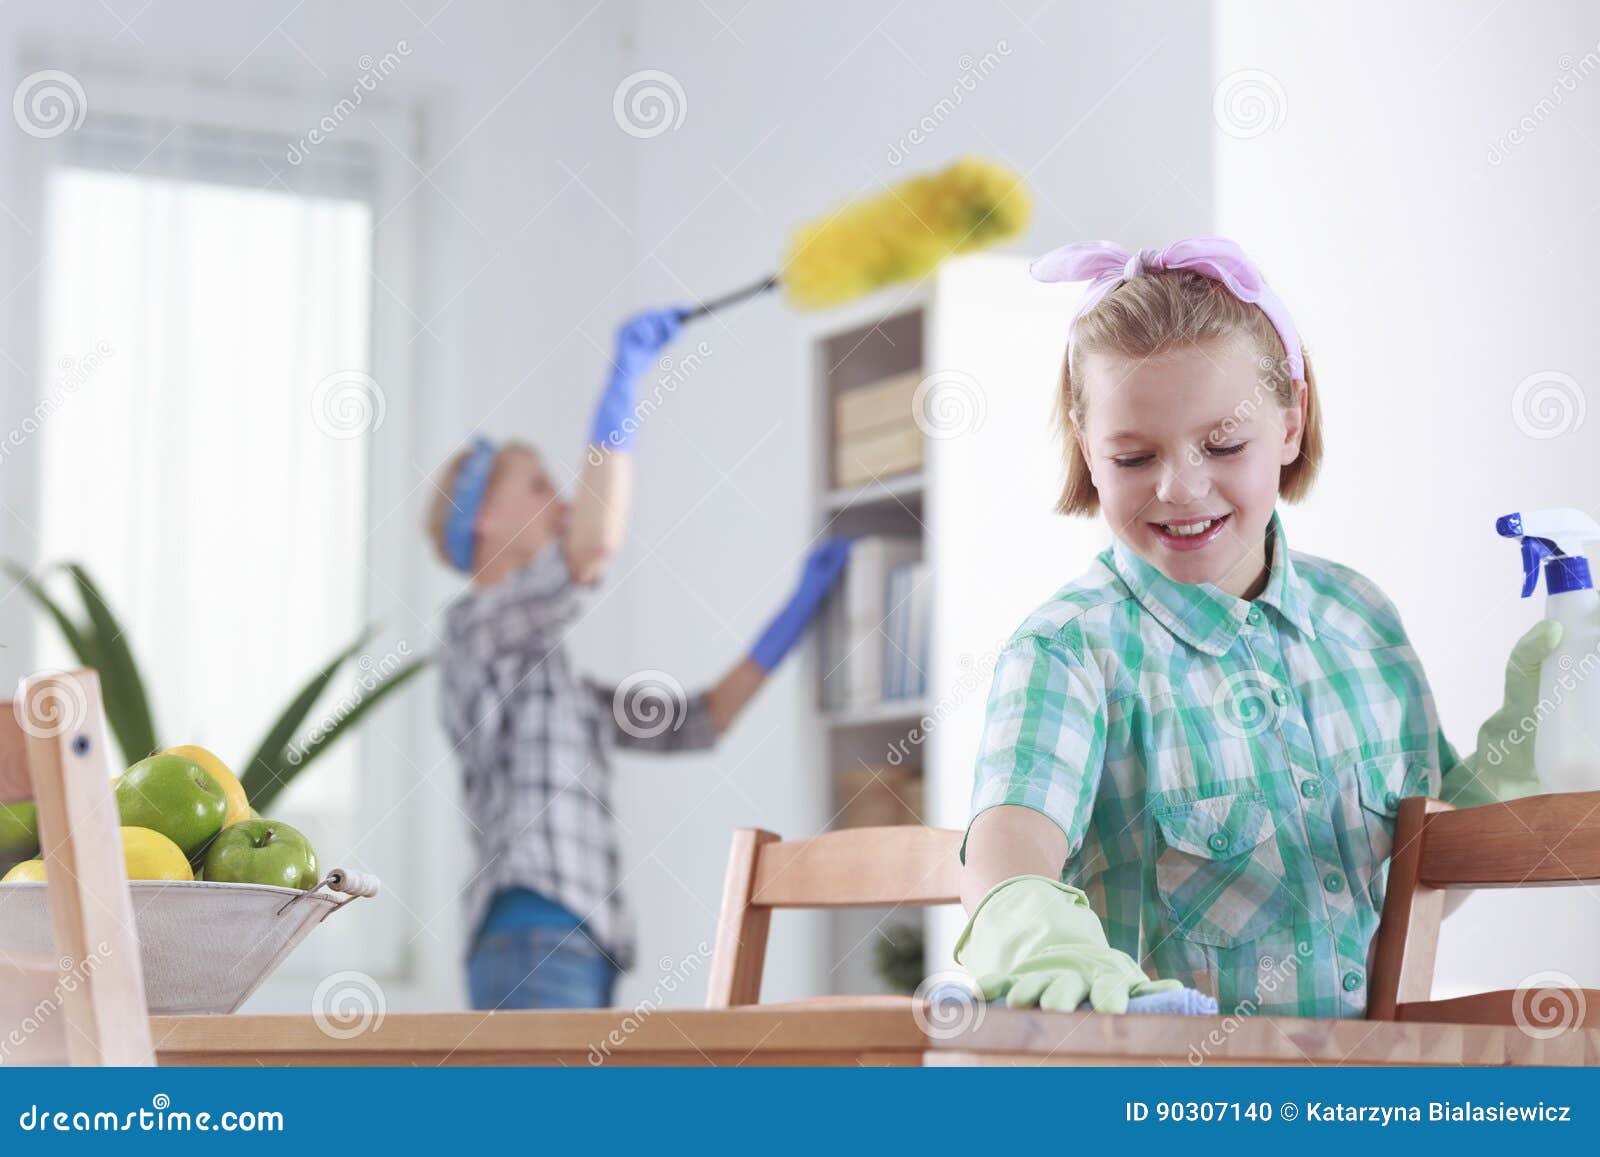 Flicka som hemma gör ren. Le flickan och hennes moder som hemma gör ren